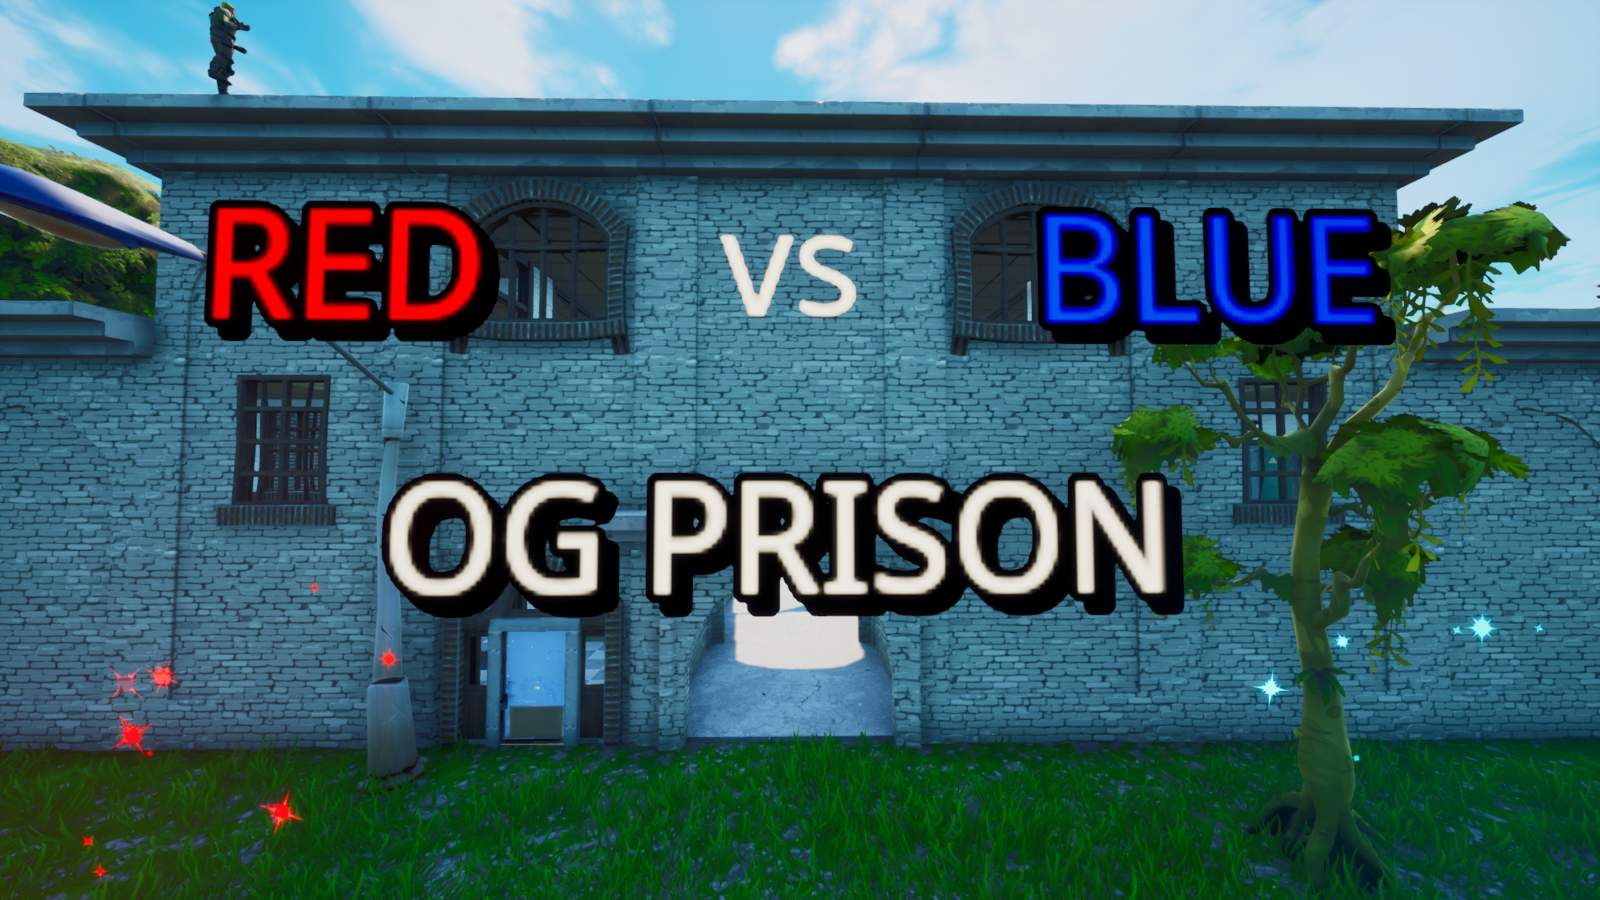 Red vs Blue: OG Prison image 2